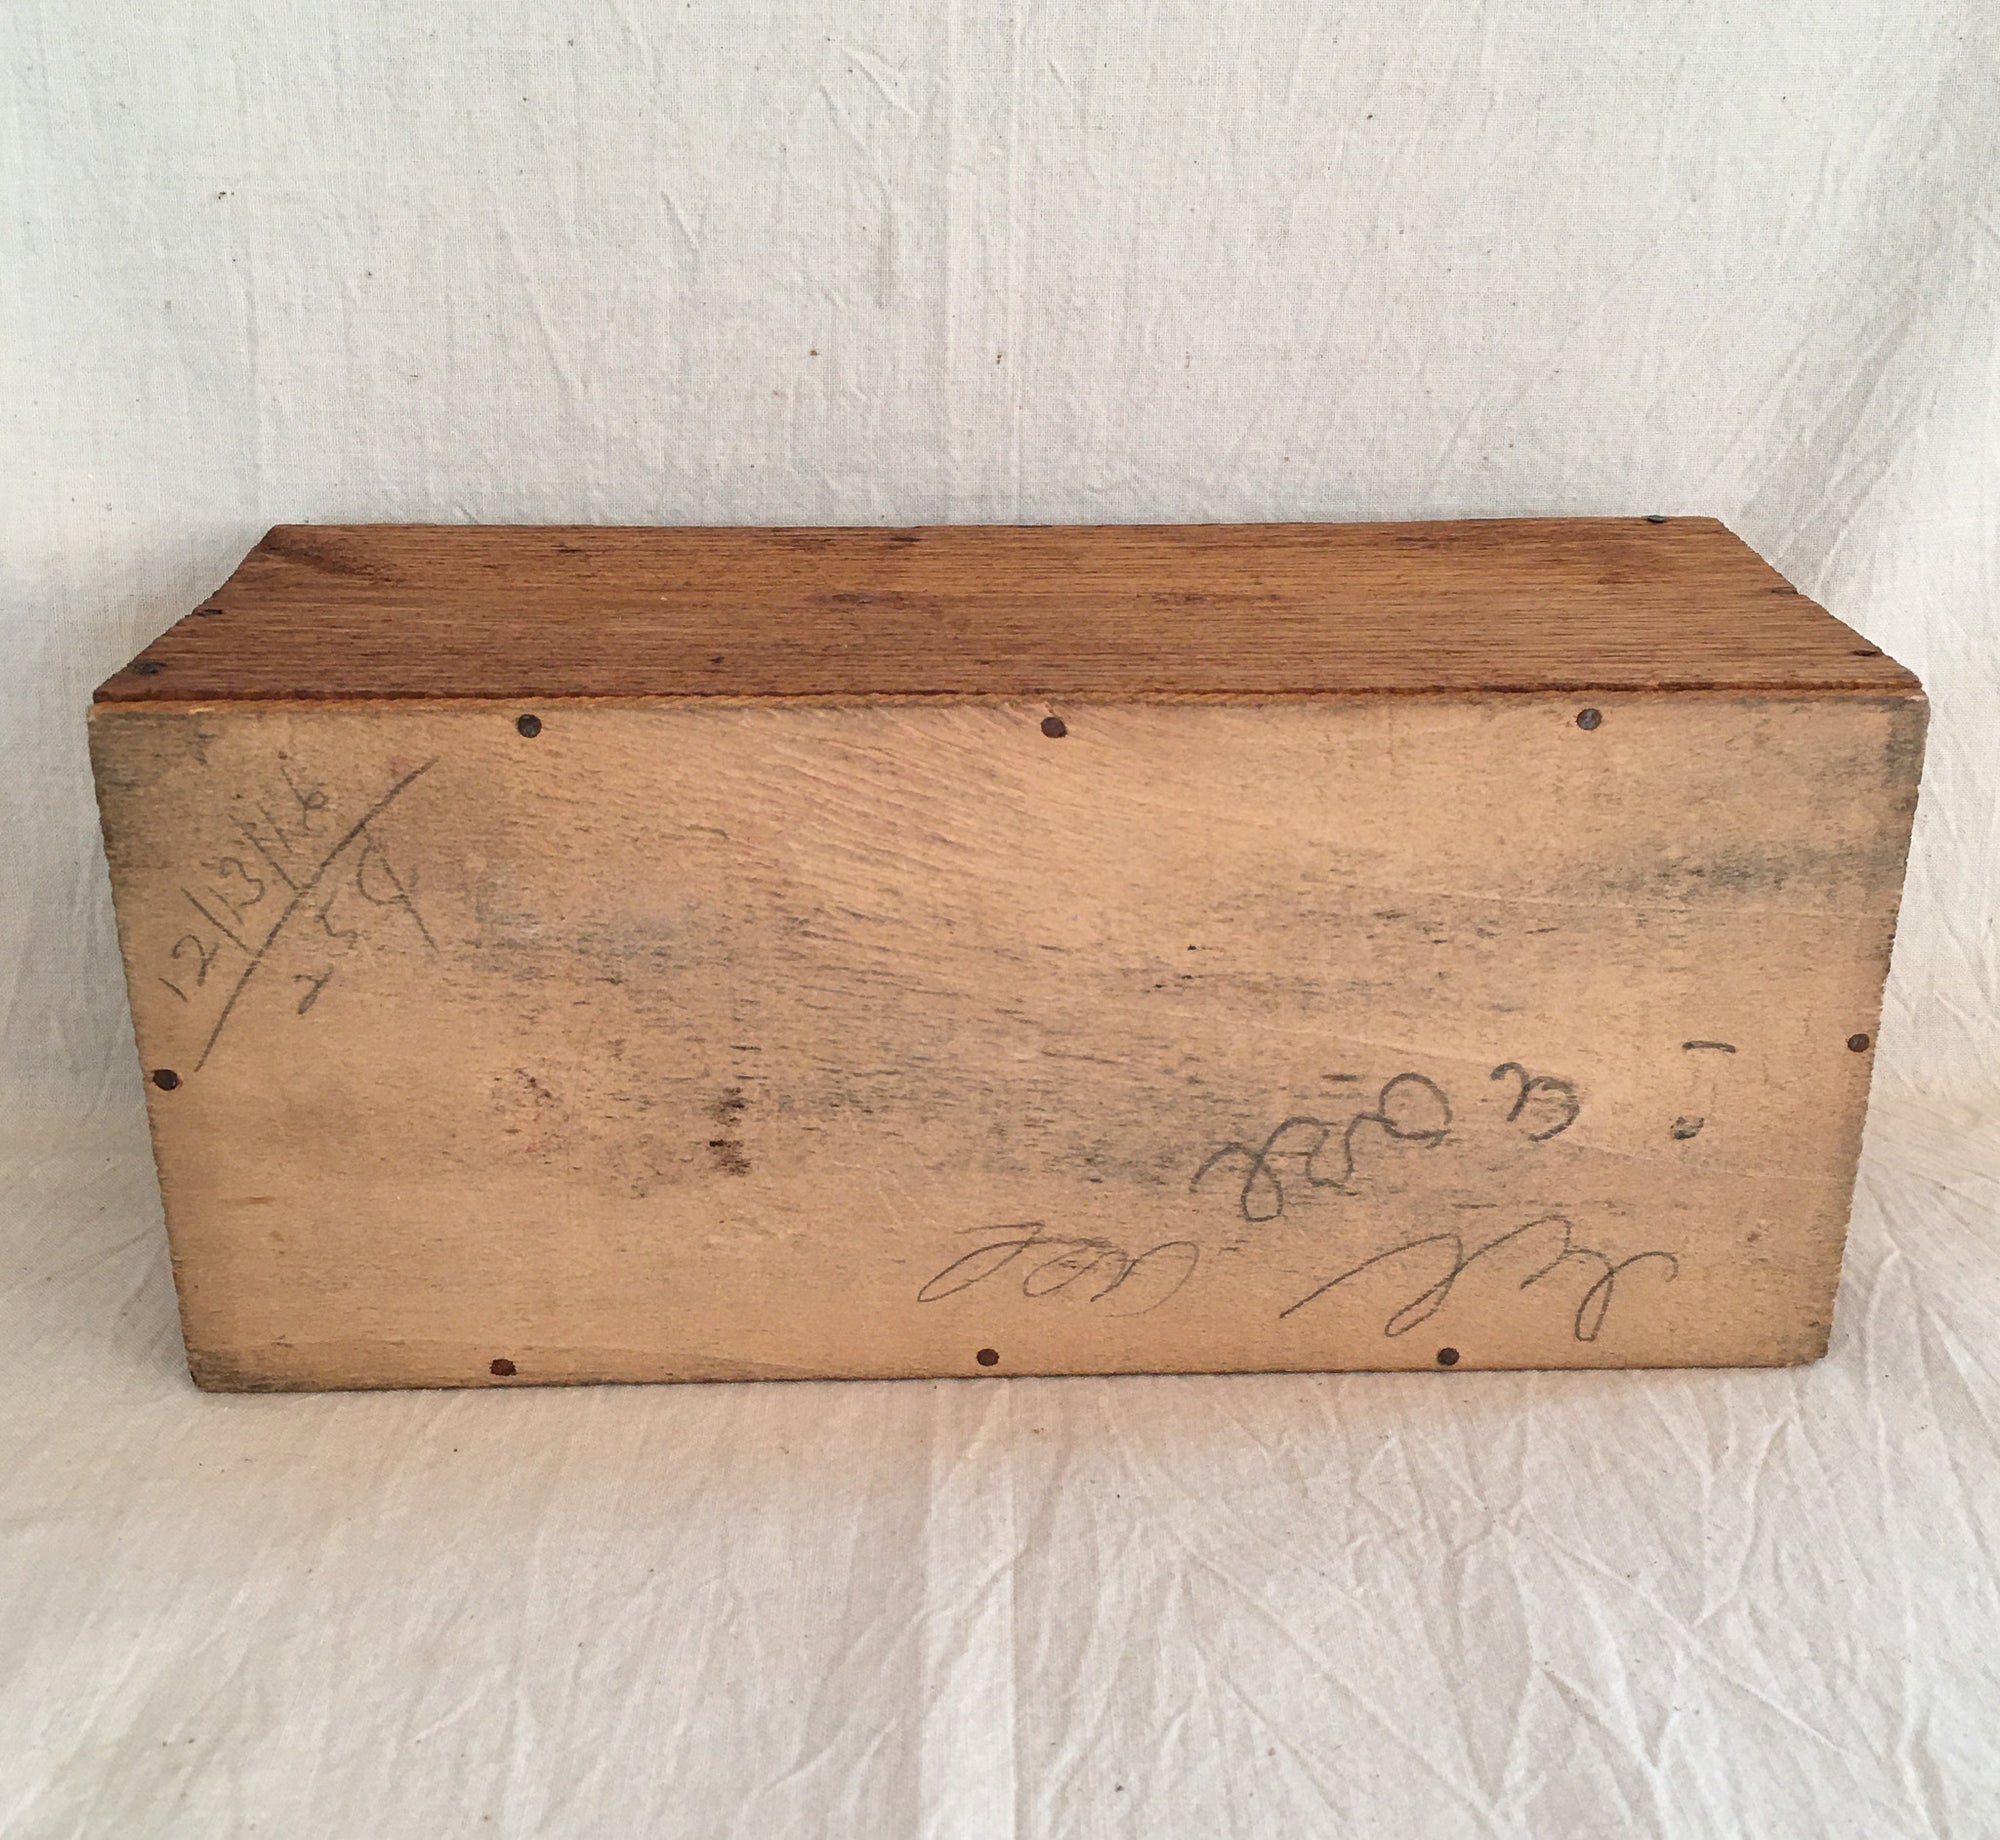 1916 Wooden Crate for Slippery Slide Game – Milton Bradley